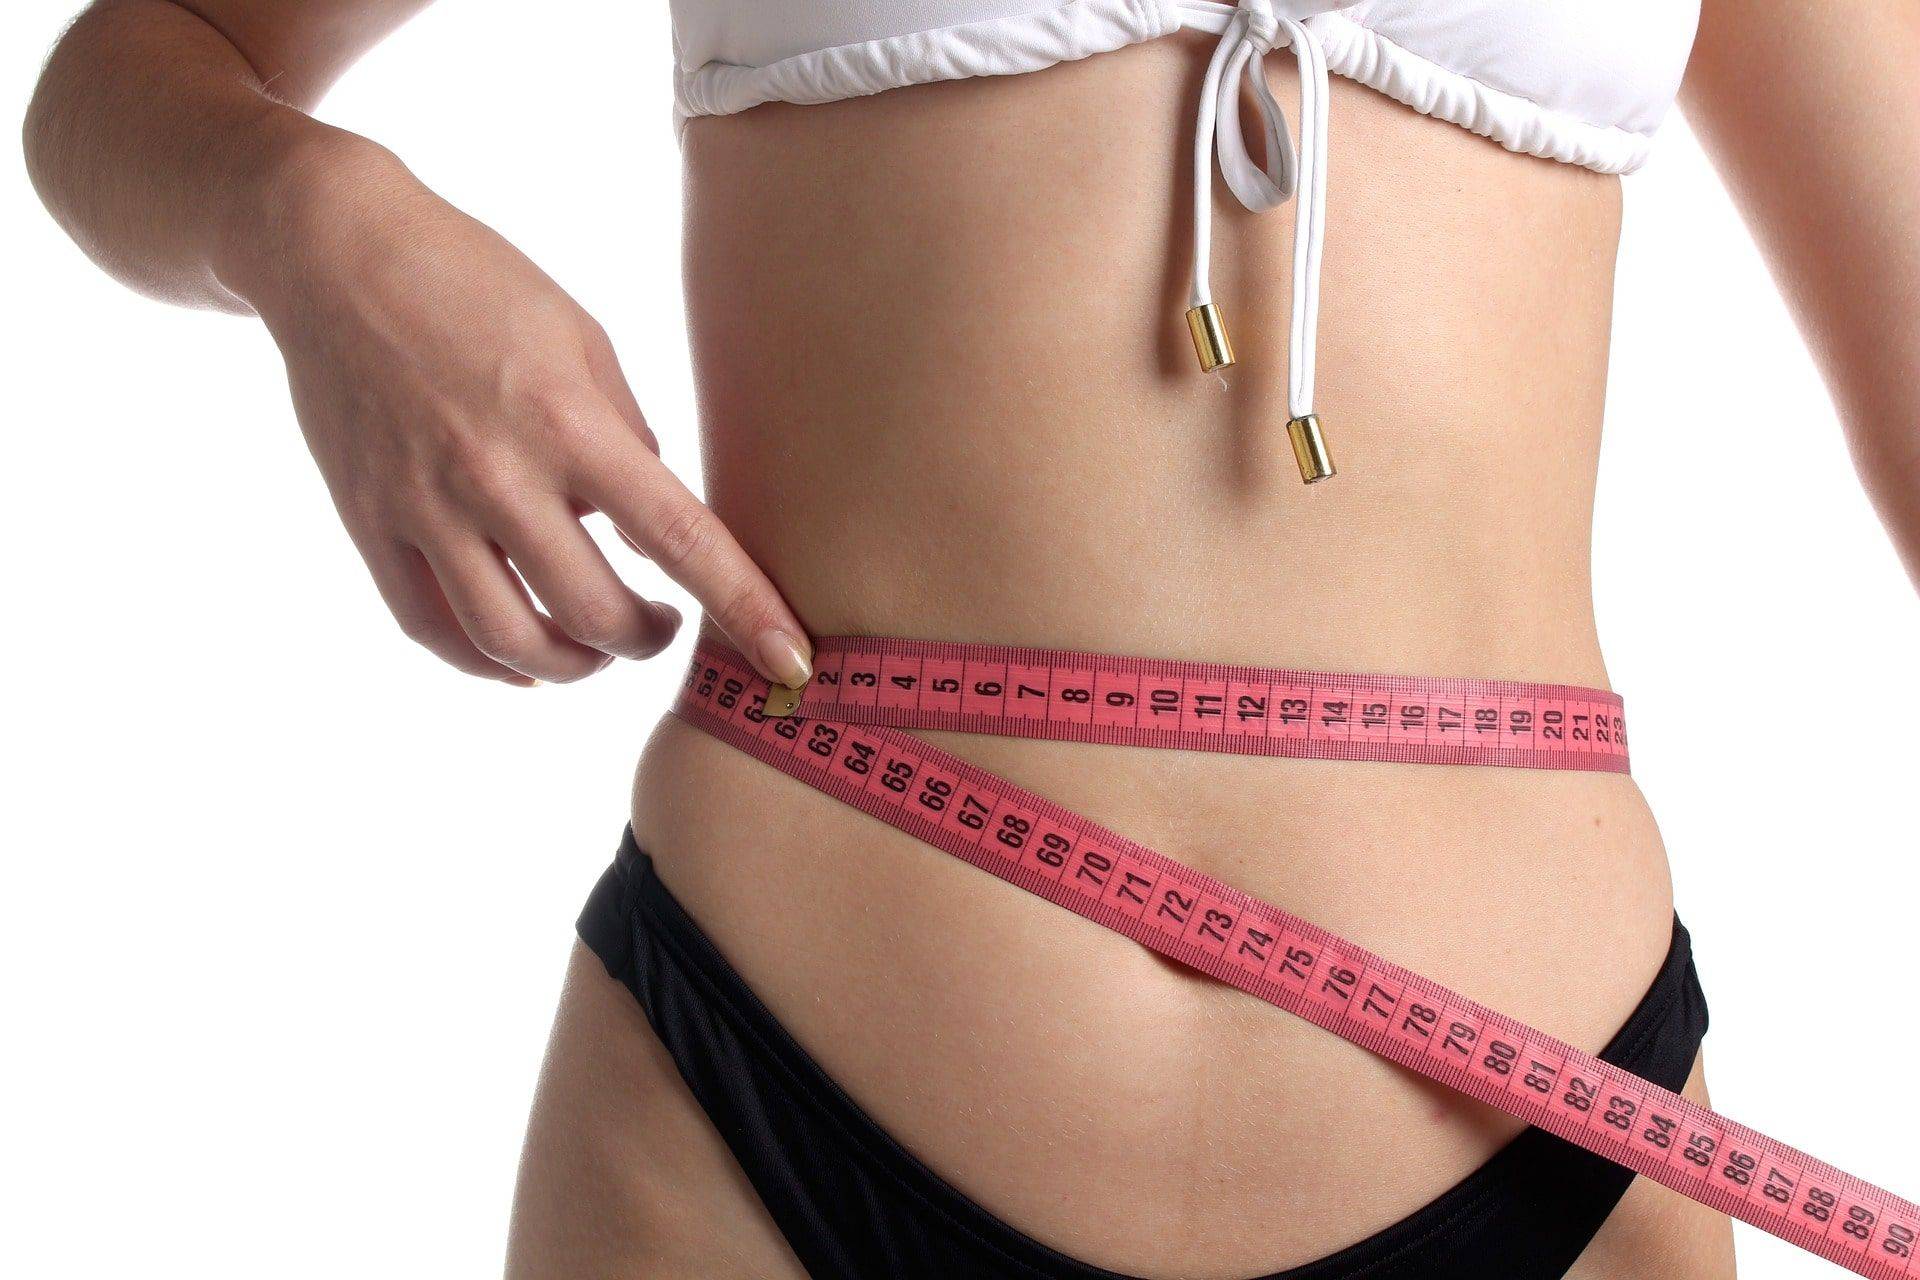 Comment perdre du poids rapidement - méthodes, moyens, exercices, effets